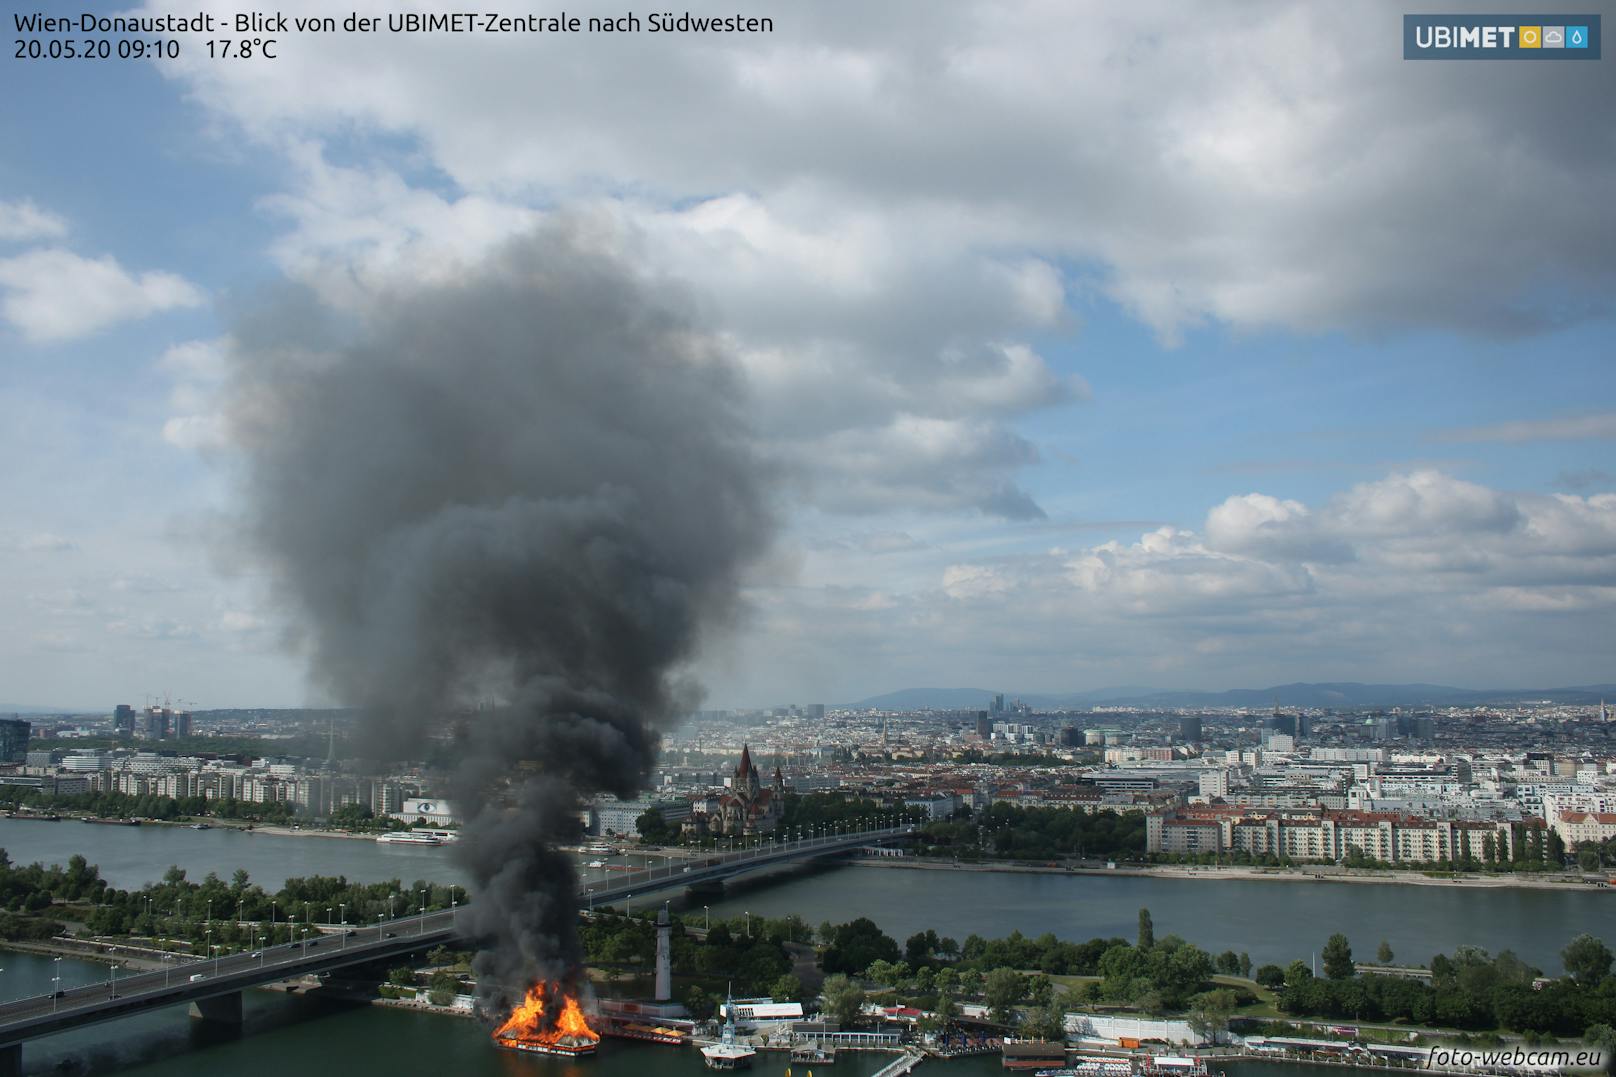 Eine Webcam der UBIMET zeigt deutlich, wann der Brand ausbrach.